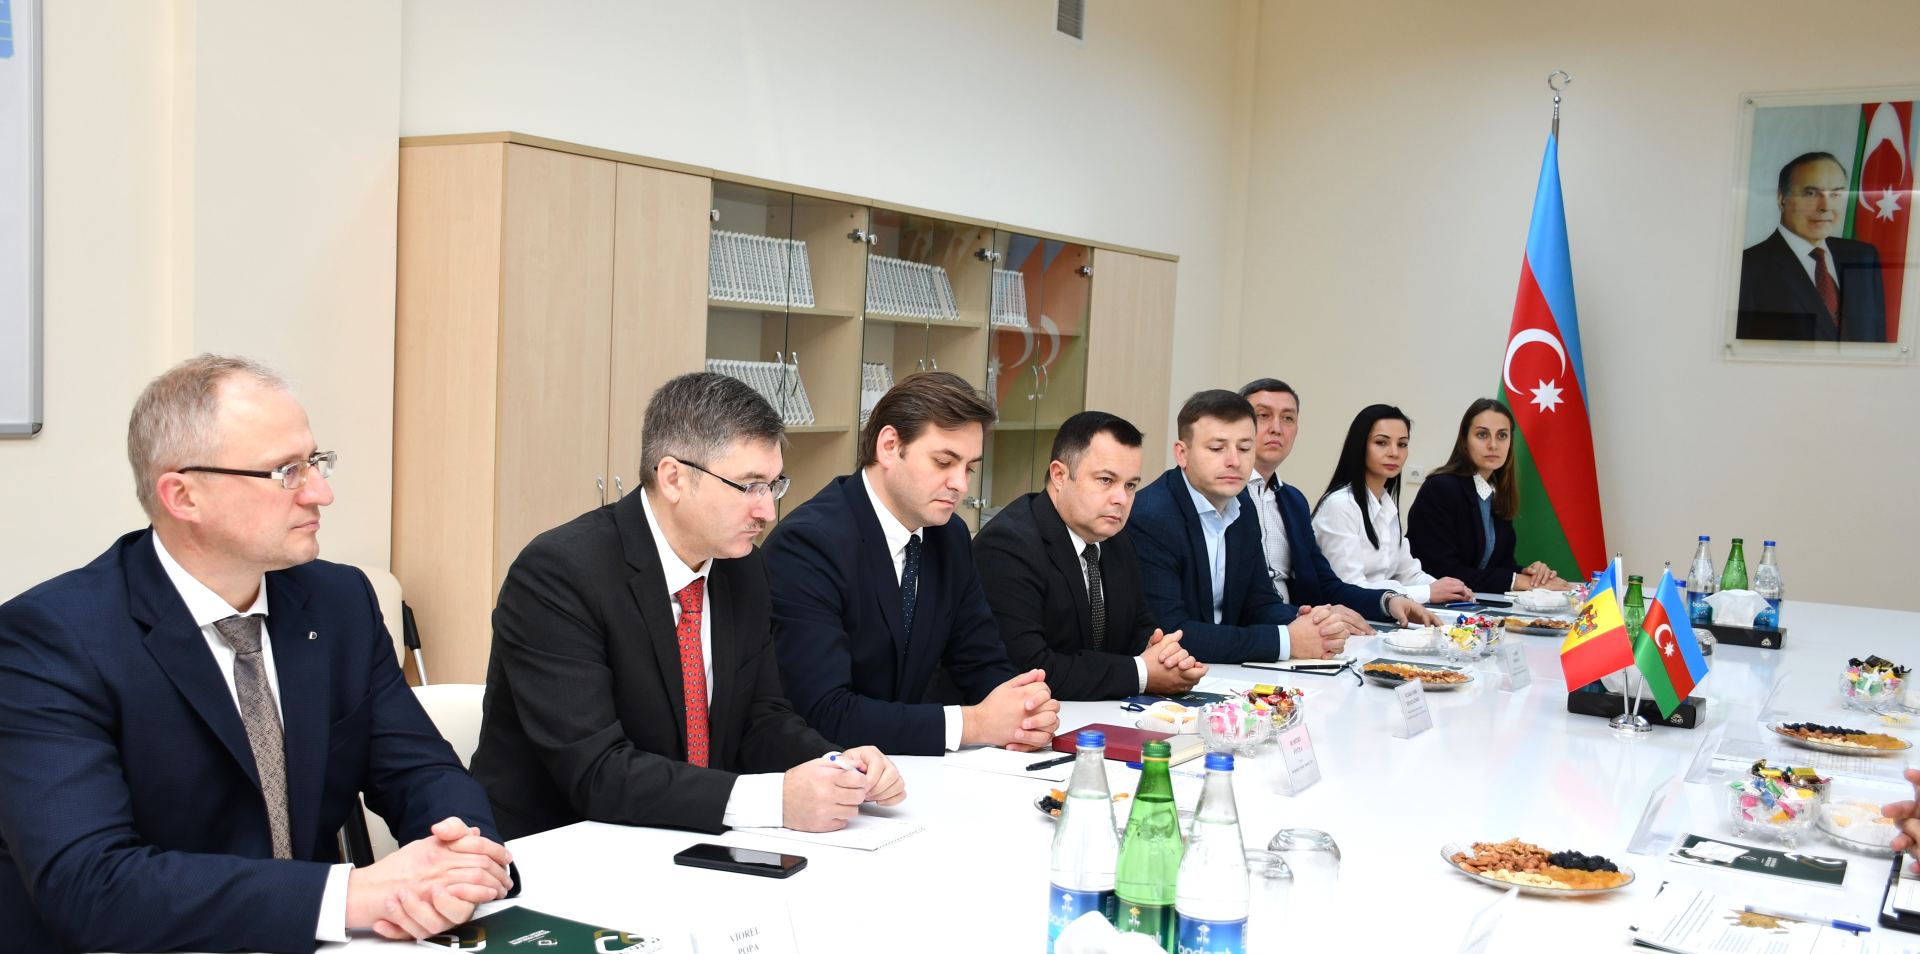 Молдавских бизнесменов пригласили инвестировать в промзоны на освобожденных землях Азербайджана